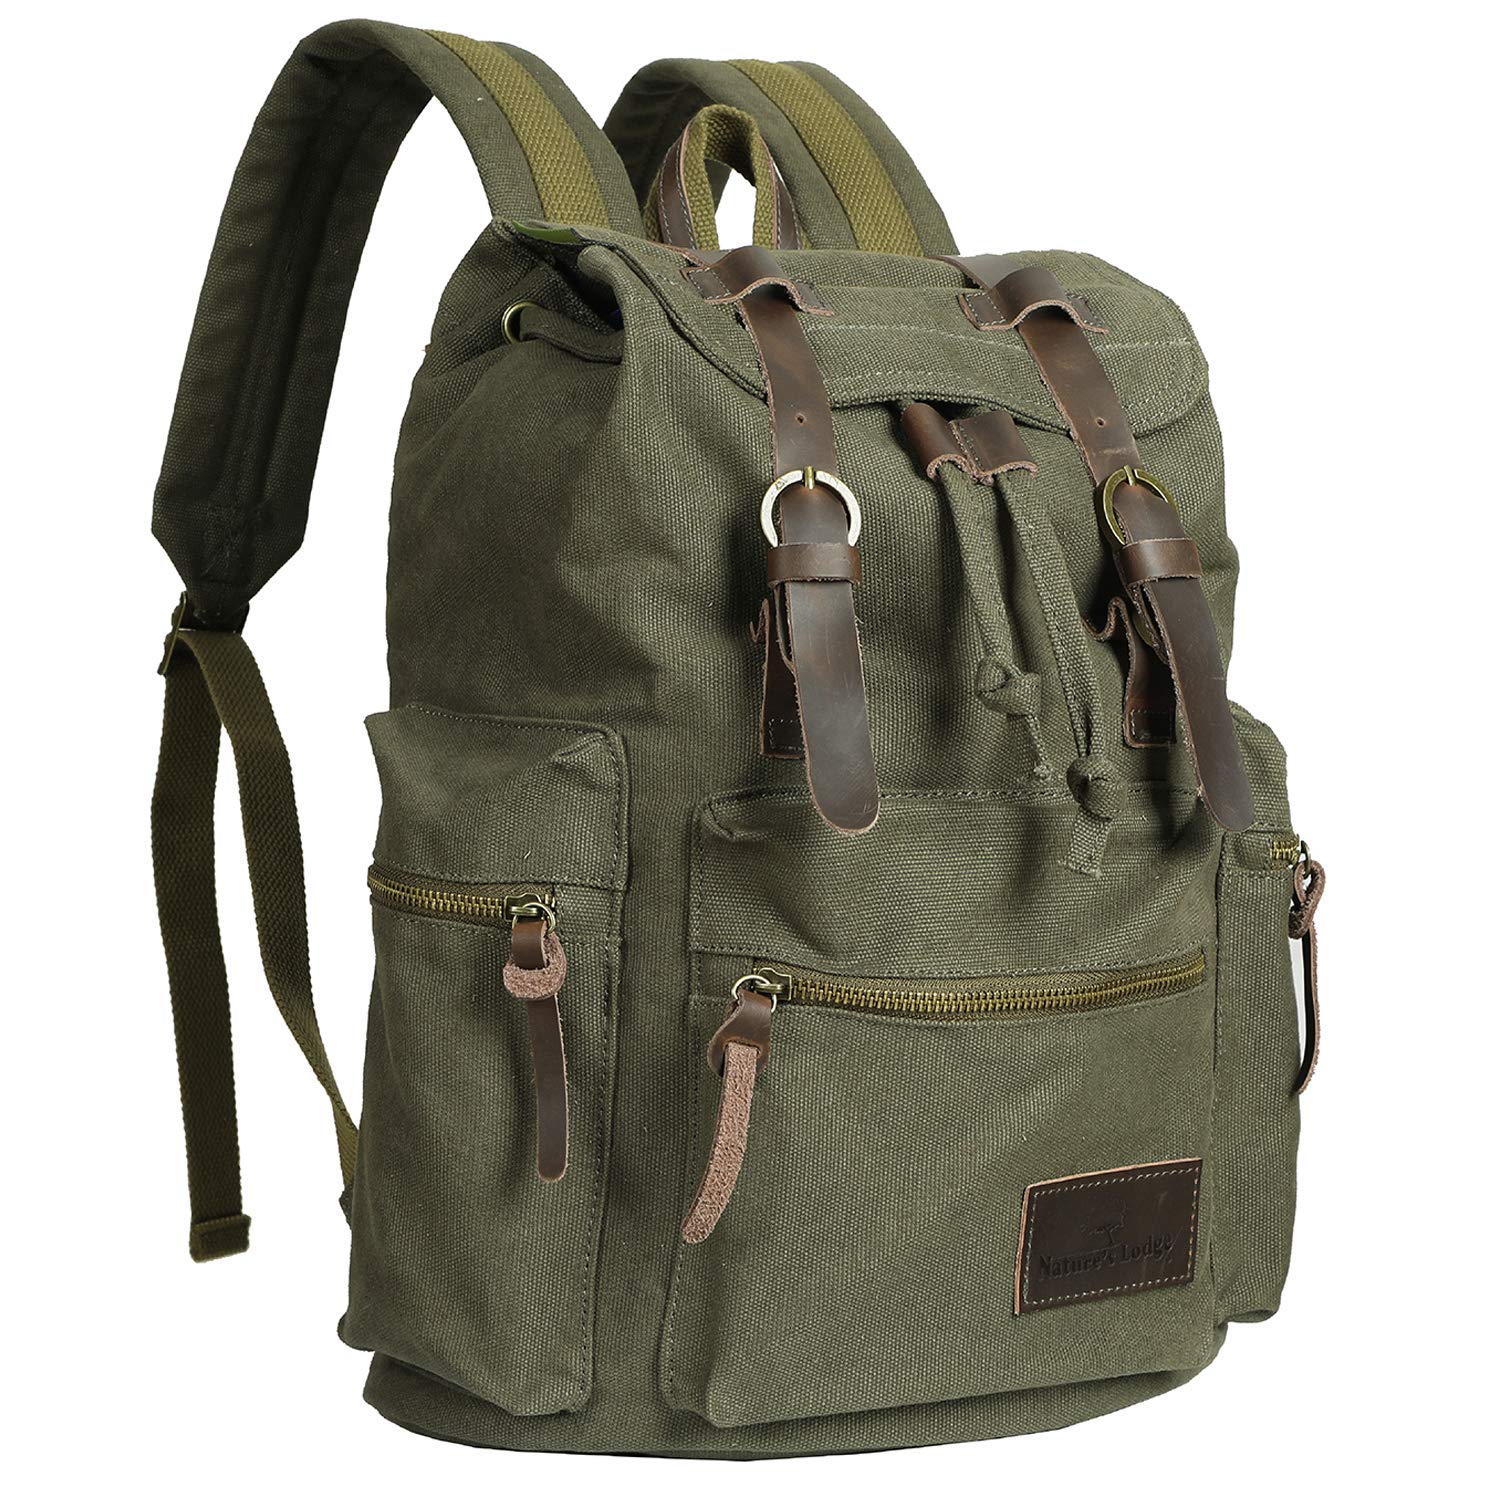 MF Studio Canvas Backpack Vintage Casual Bag Shoulder Sling Daypack Drawstring Travel Rucksack - image 1 of 7